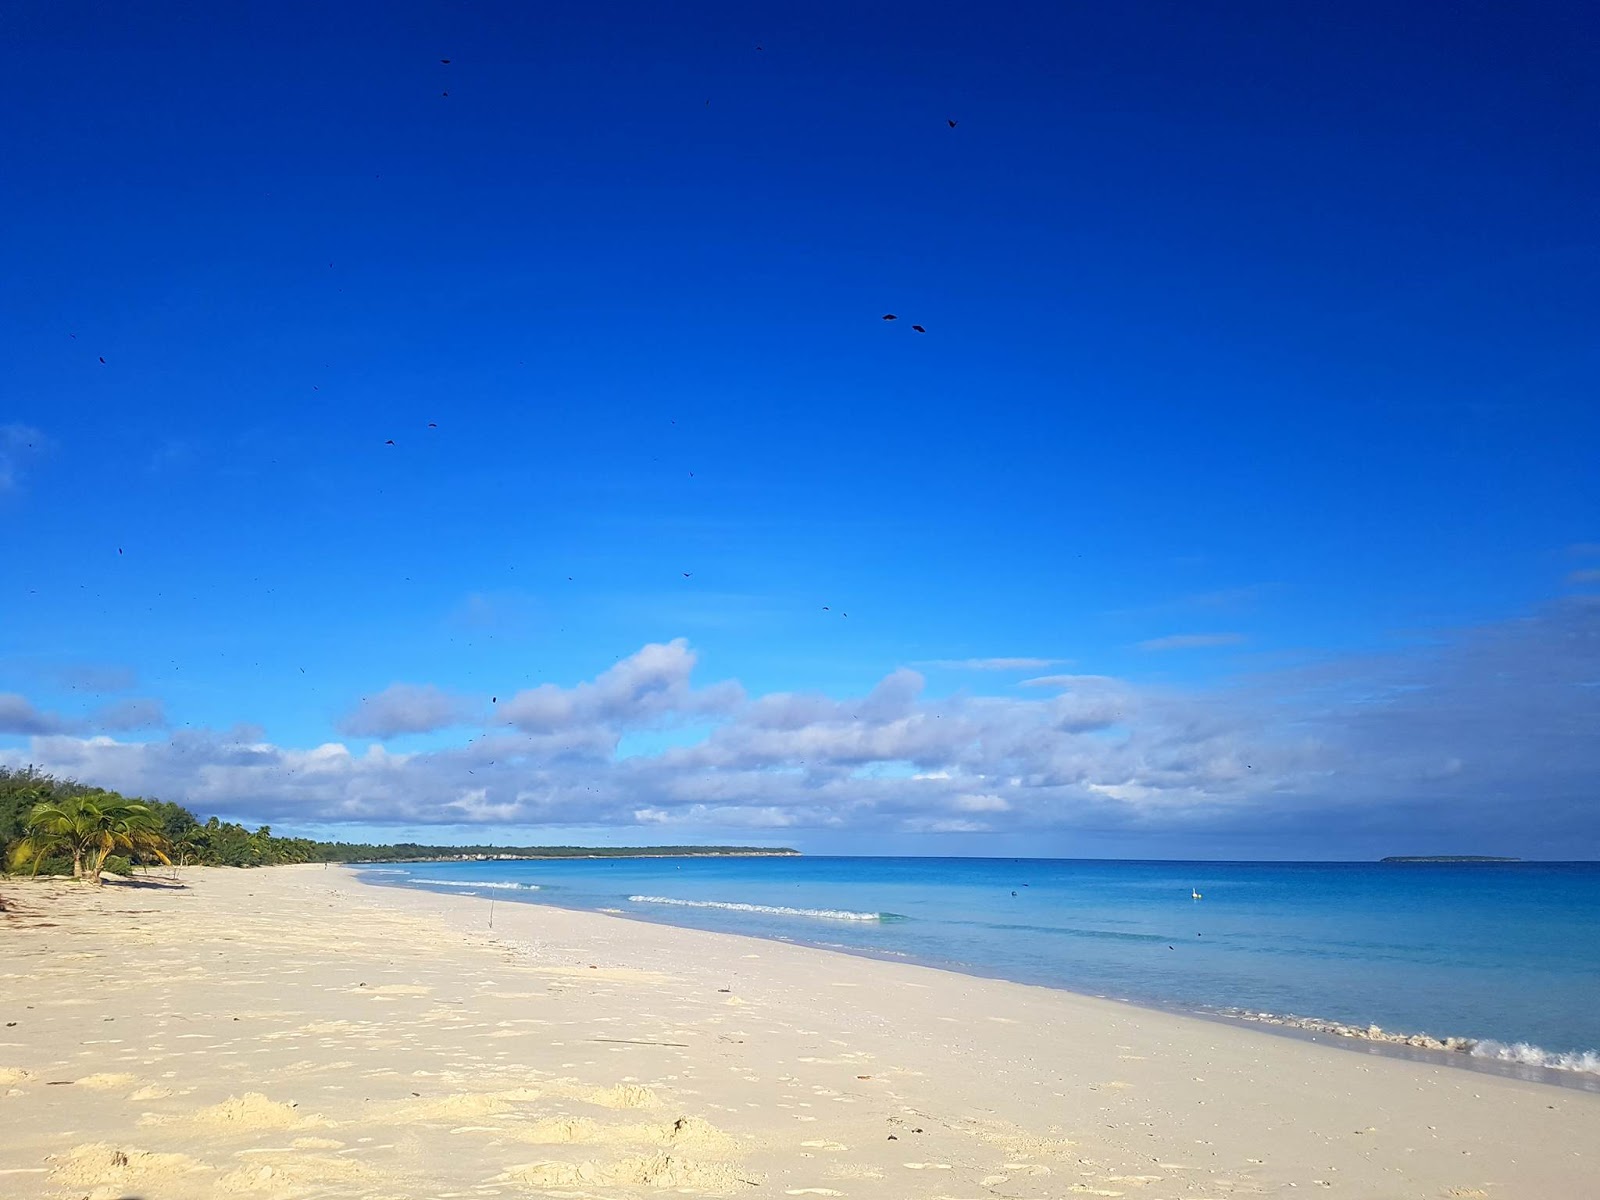 Mouli Beach'in fotoğrafı beyaz kum yüzey ile